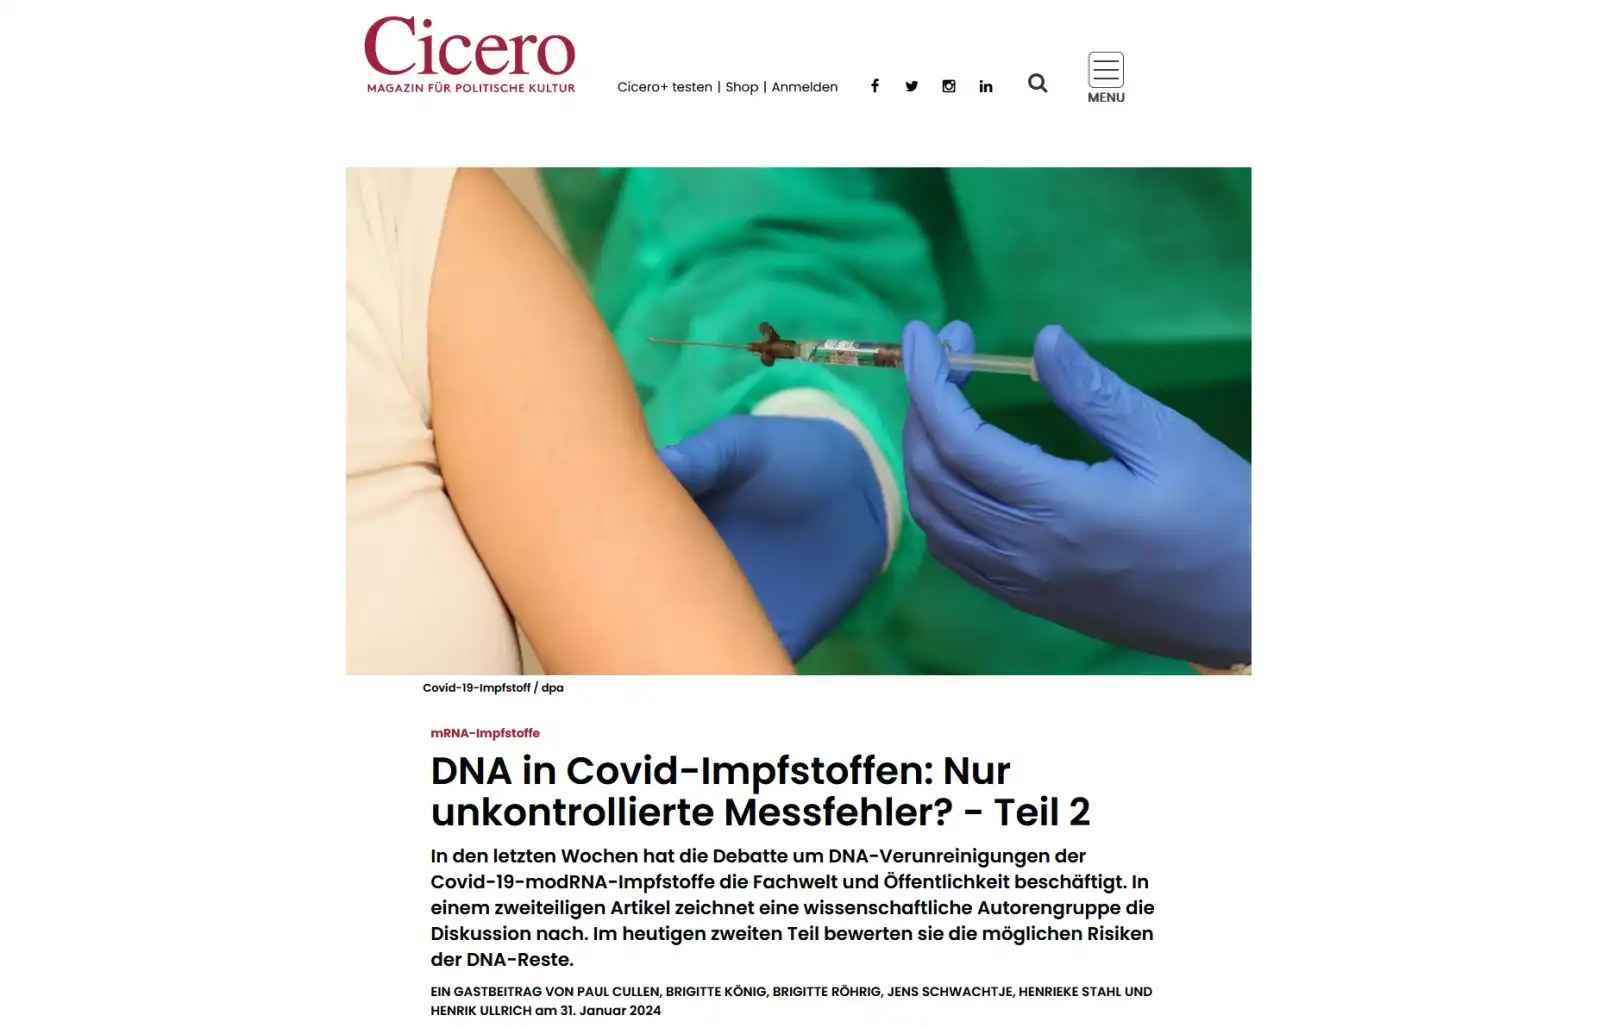 DNA w szczepionkach na Covid: Czy to tylko przypadkowe błędy pomiarowe? - Część 2